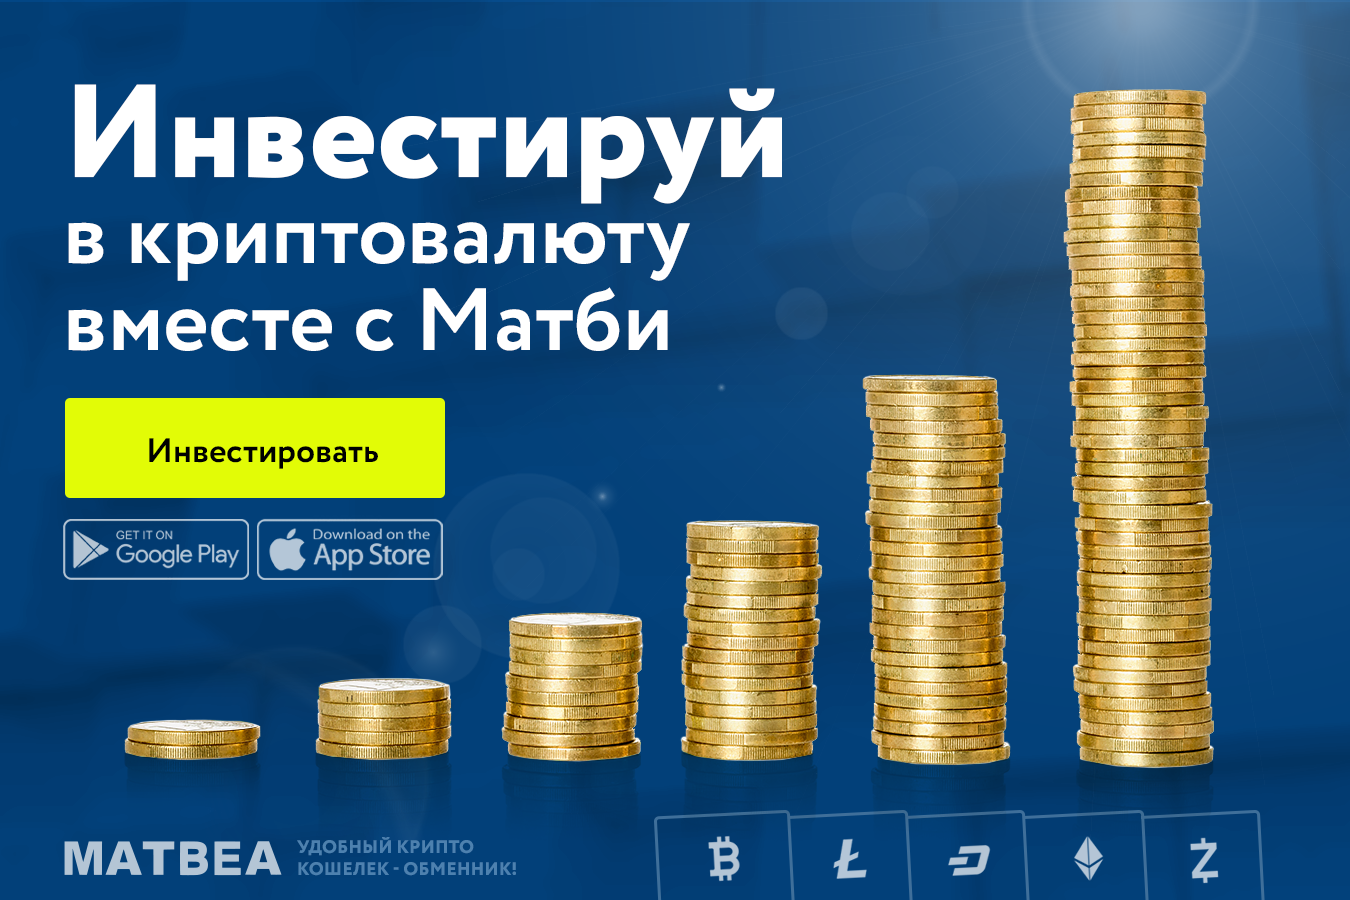 Купить биткоины выгодно форум курсы обмена валют белоруссии